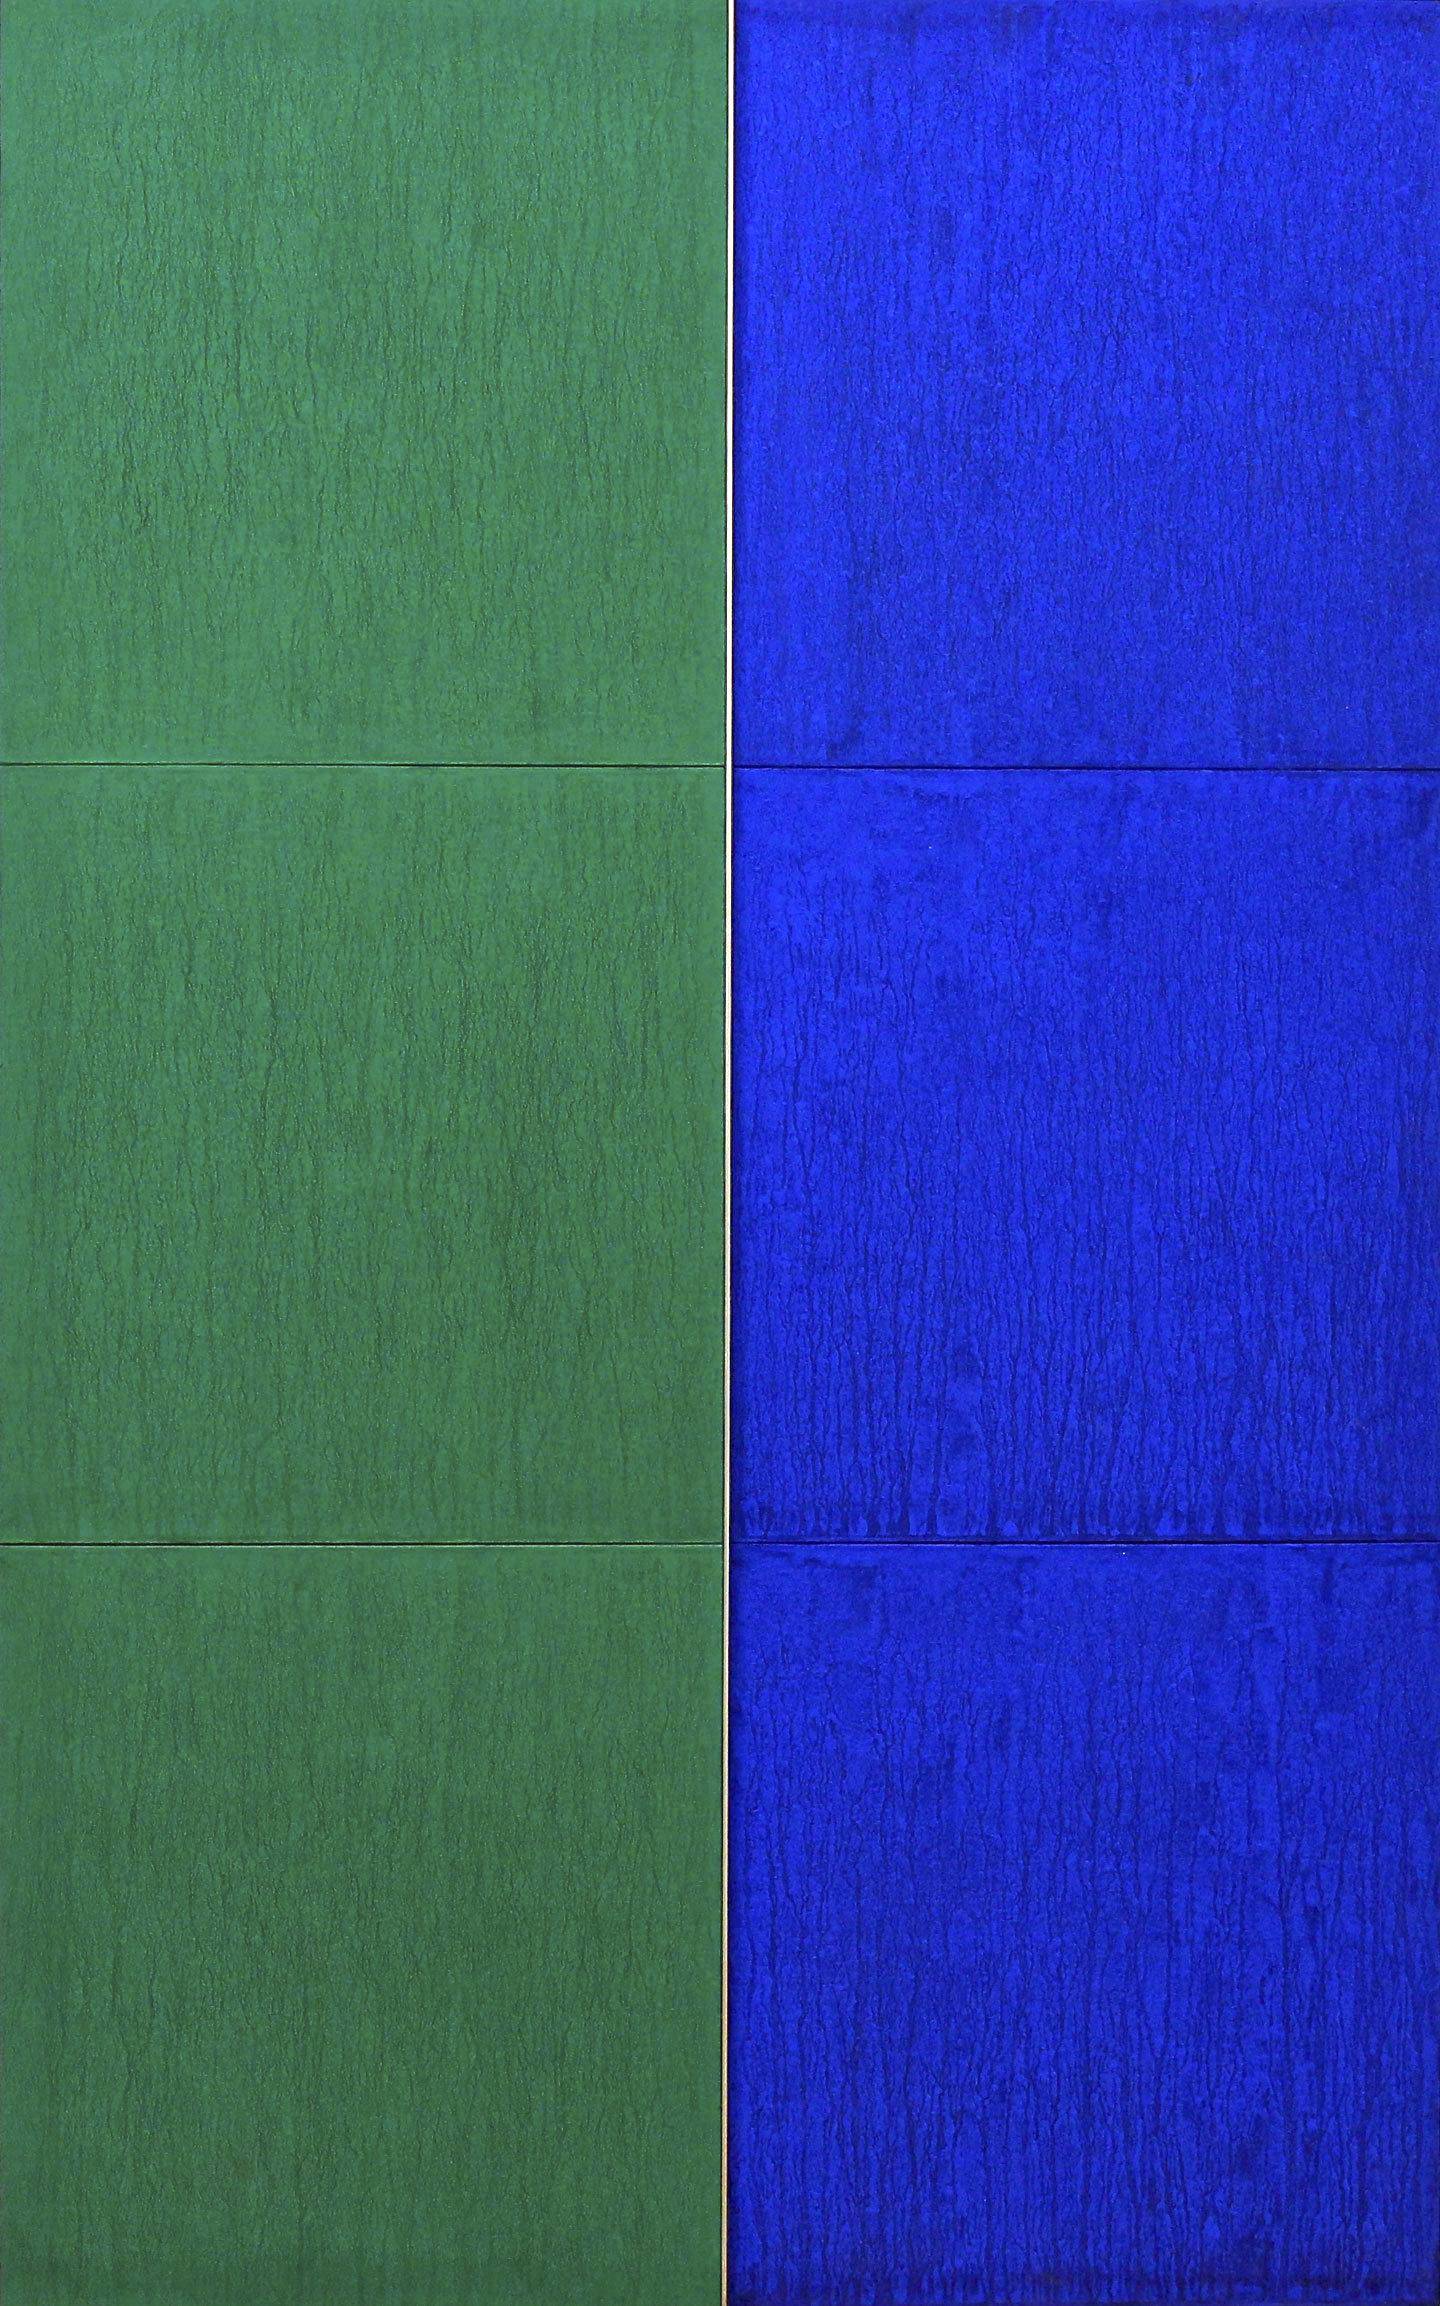 Untitled (Blue/Green) (1961) by Tadaaki Kuwayama. Courtesy Tadaaki Kuwayama